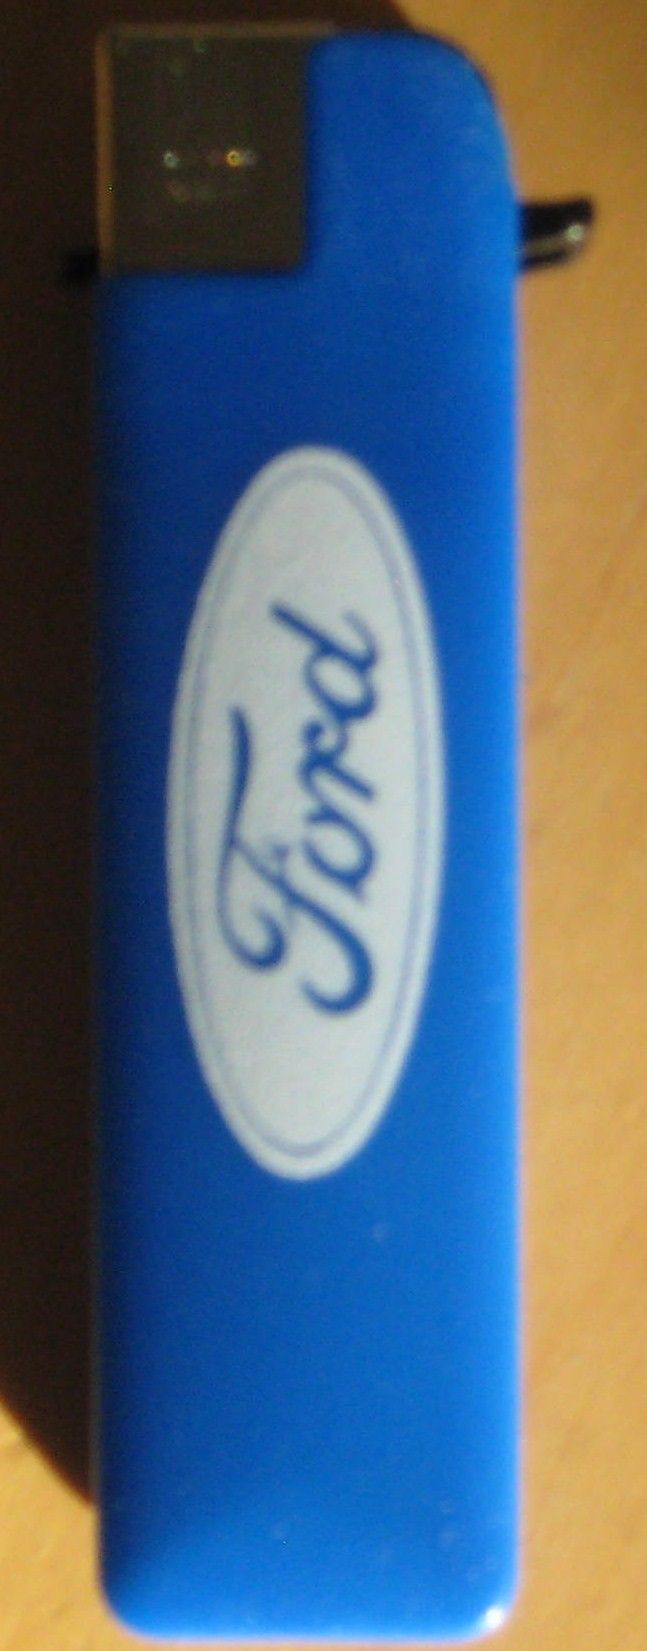 Keräilysytytin Ford-logolla.1990-luku